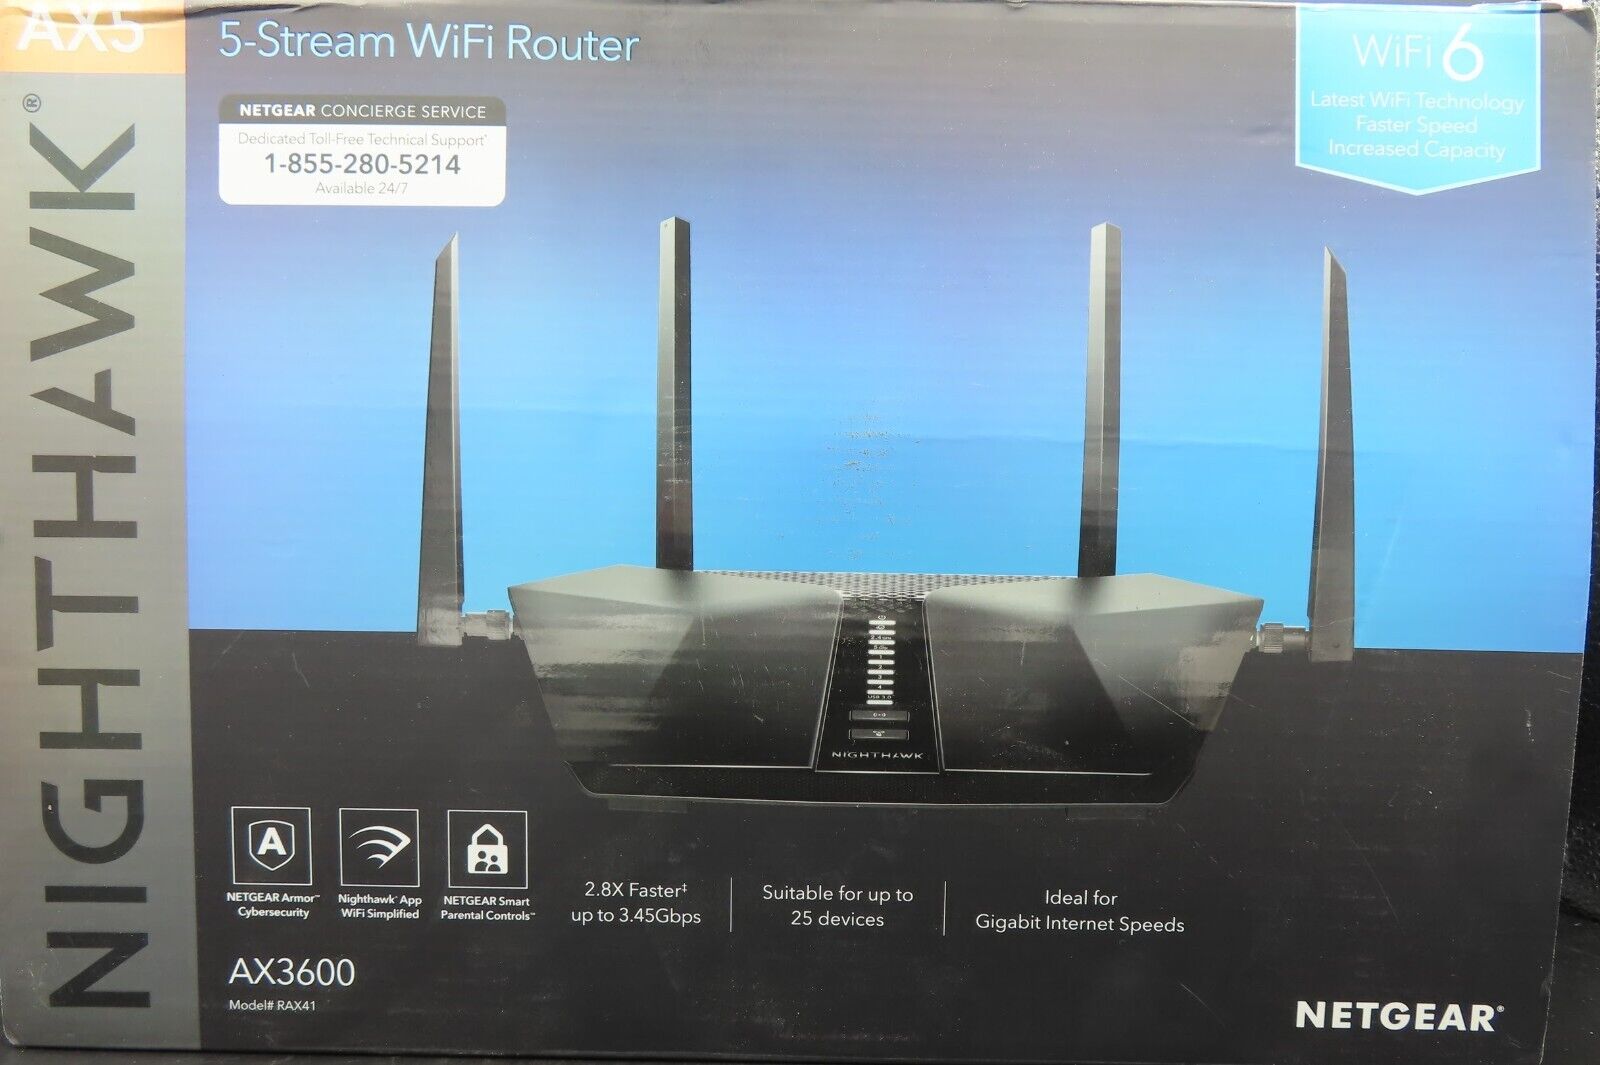 NETGEAR NIGHTHAWK AX5 5-Stream Wi-Fi Router, AX3600 (RAX41)